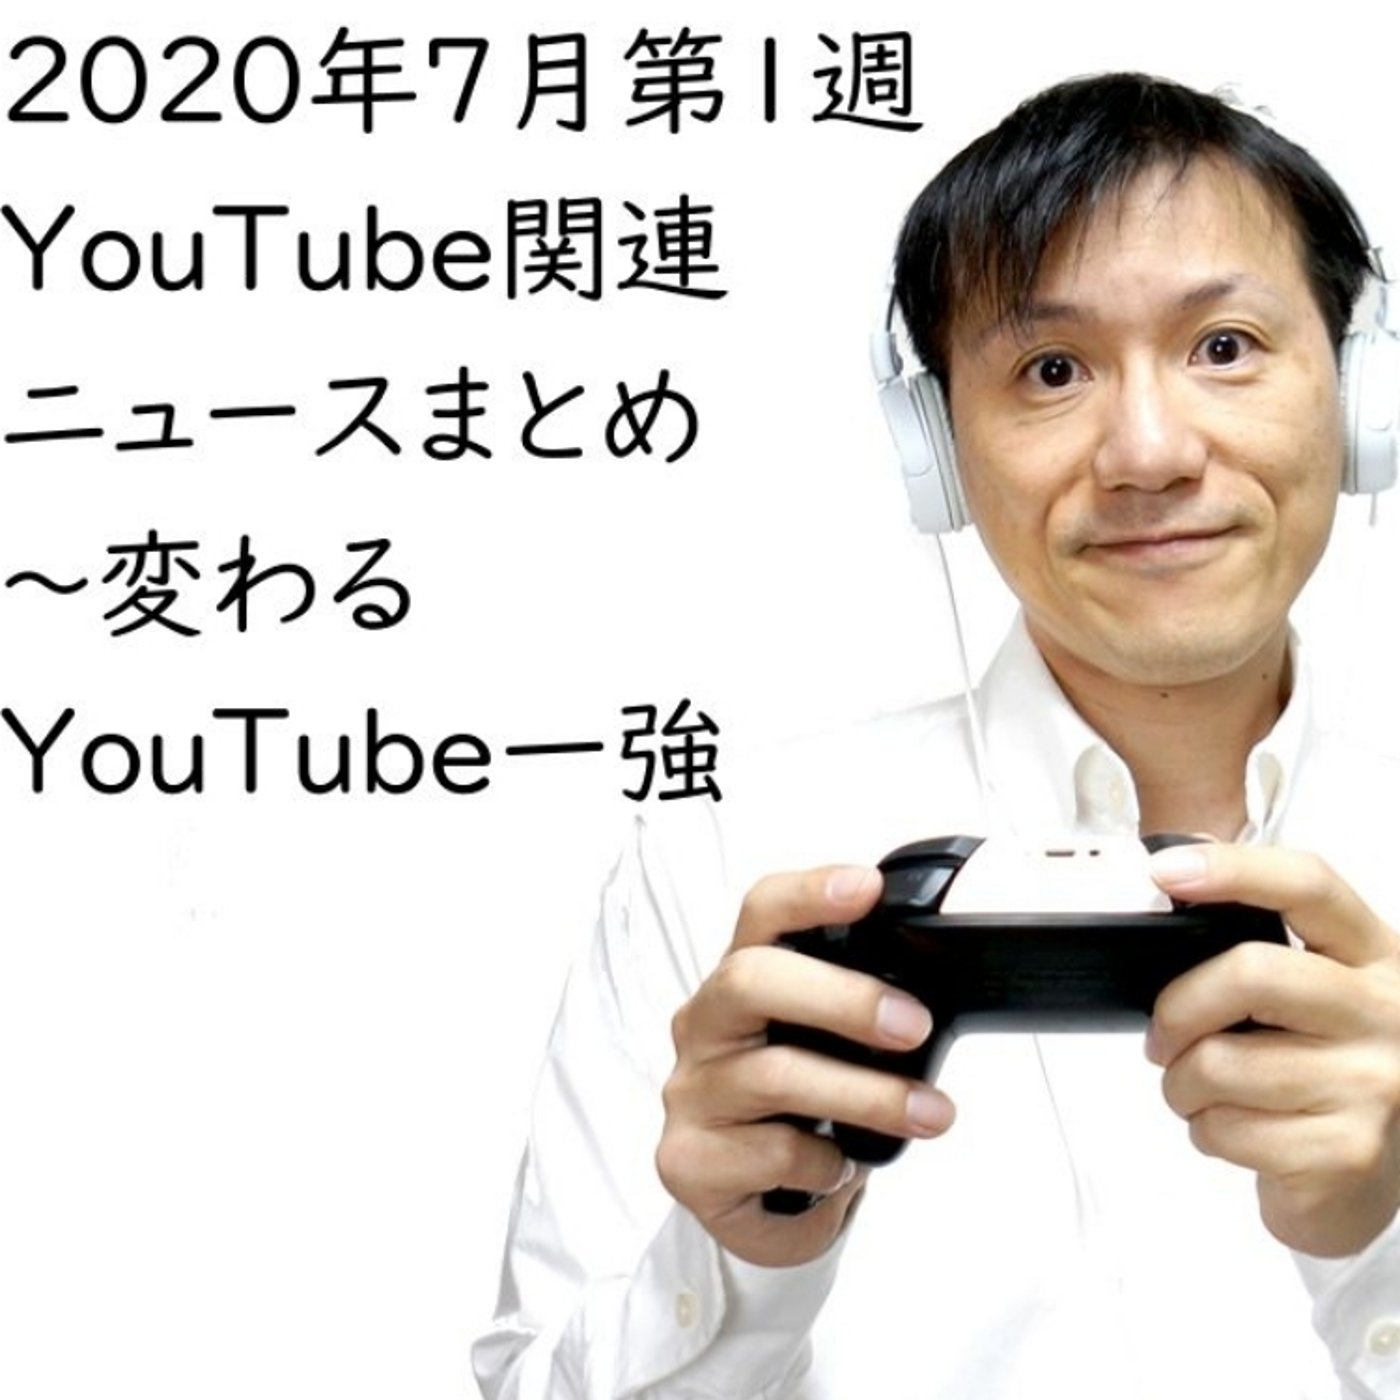 2020年7月第1週YouTube関連ニュースまとめ～IGTV広告【#137】